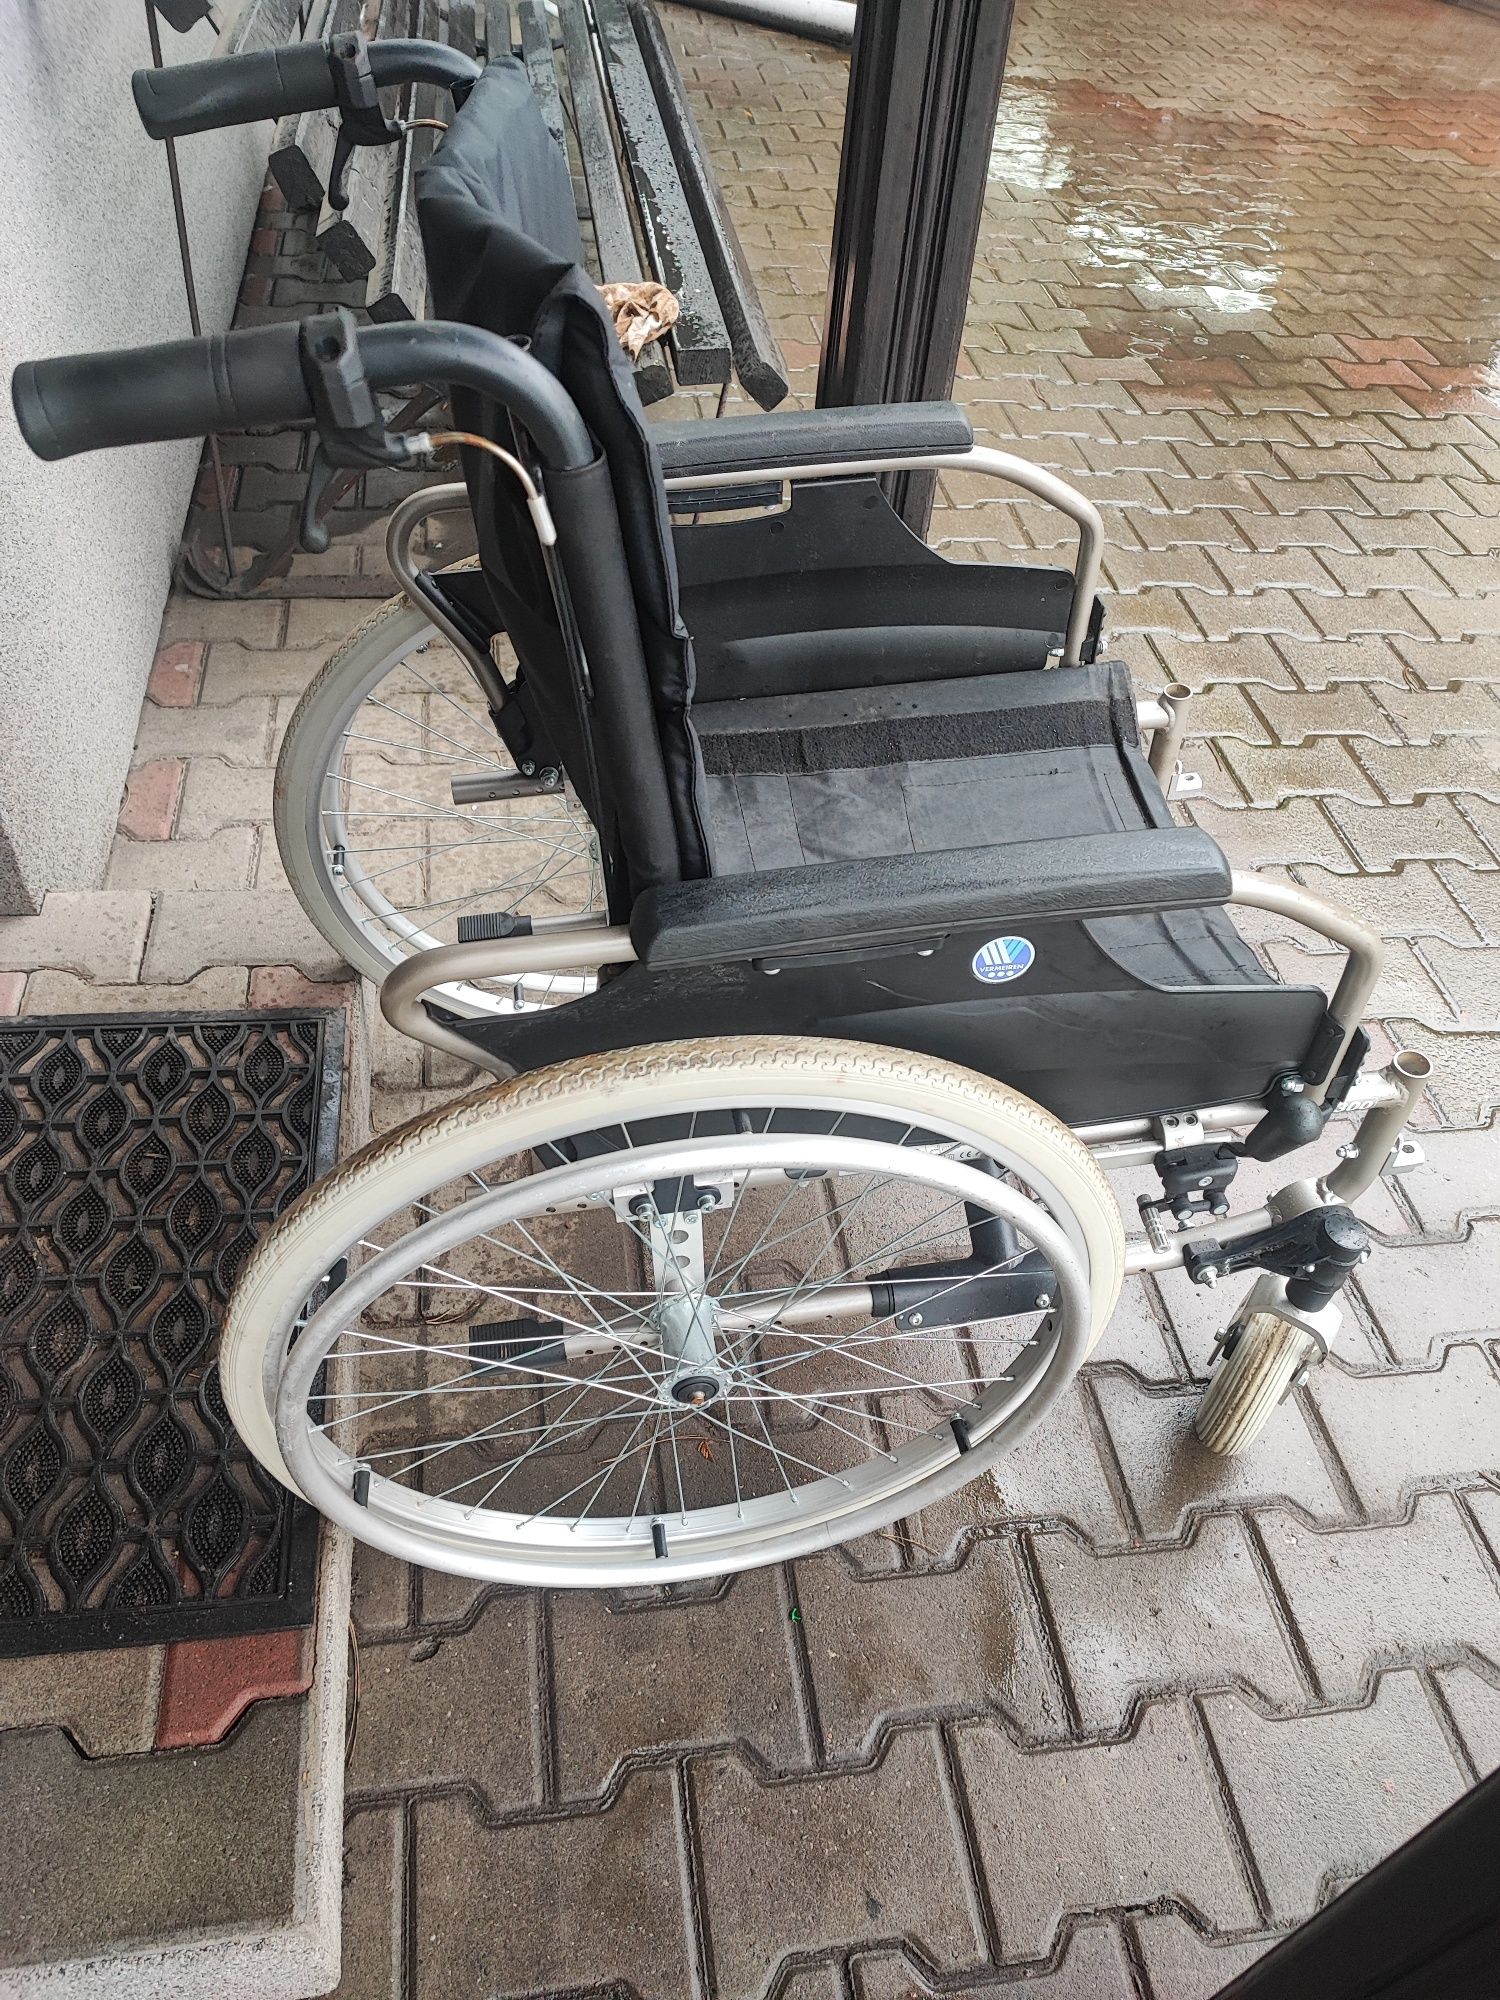 Wózek inwalidzki vermeiren v300